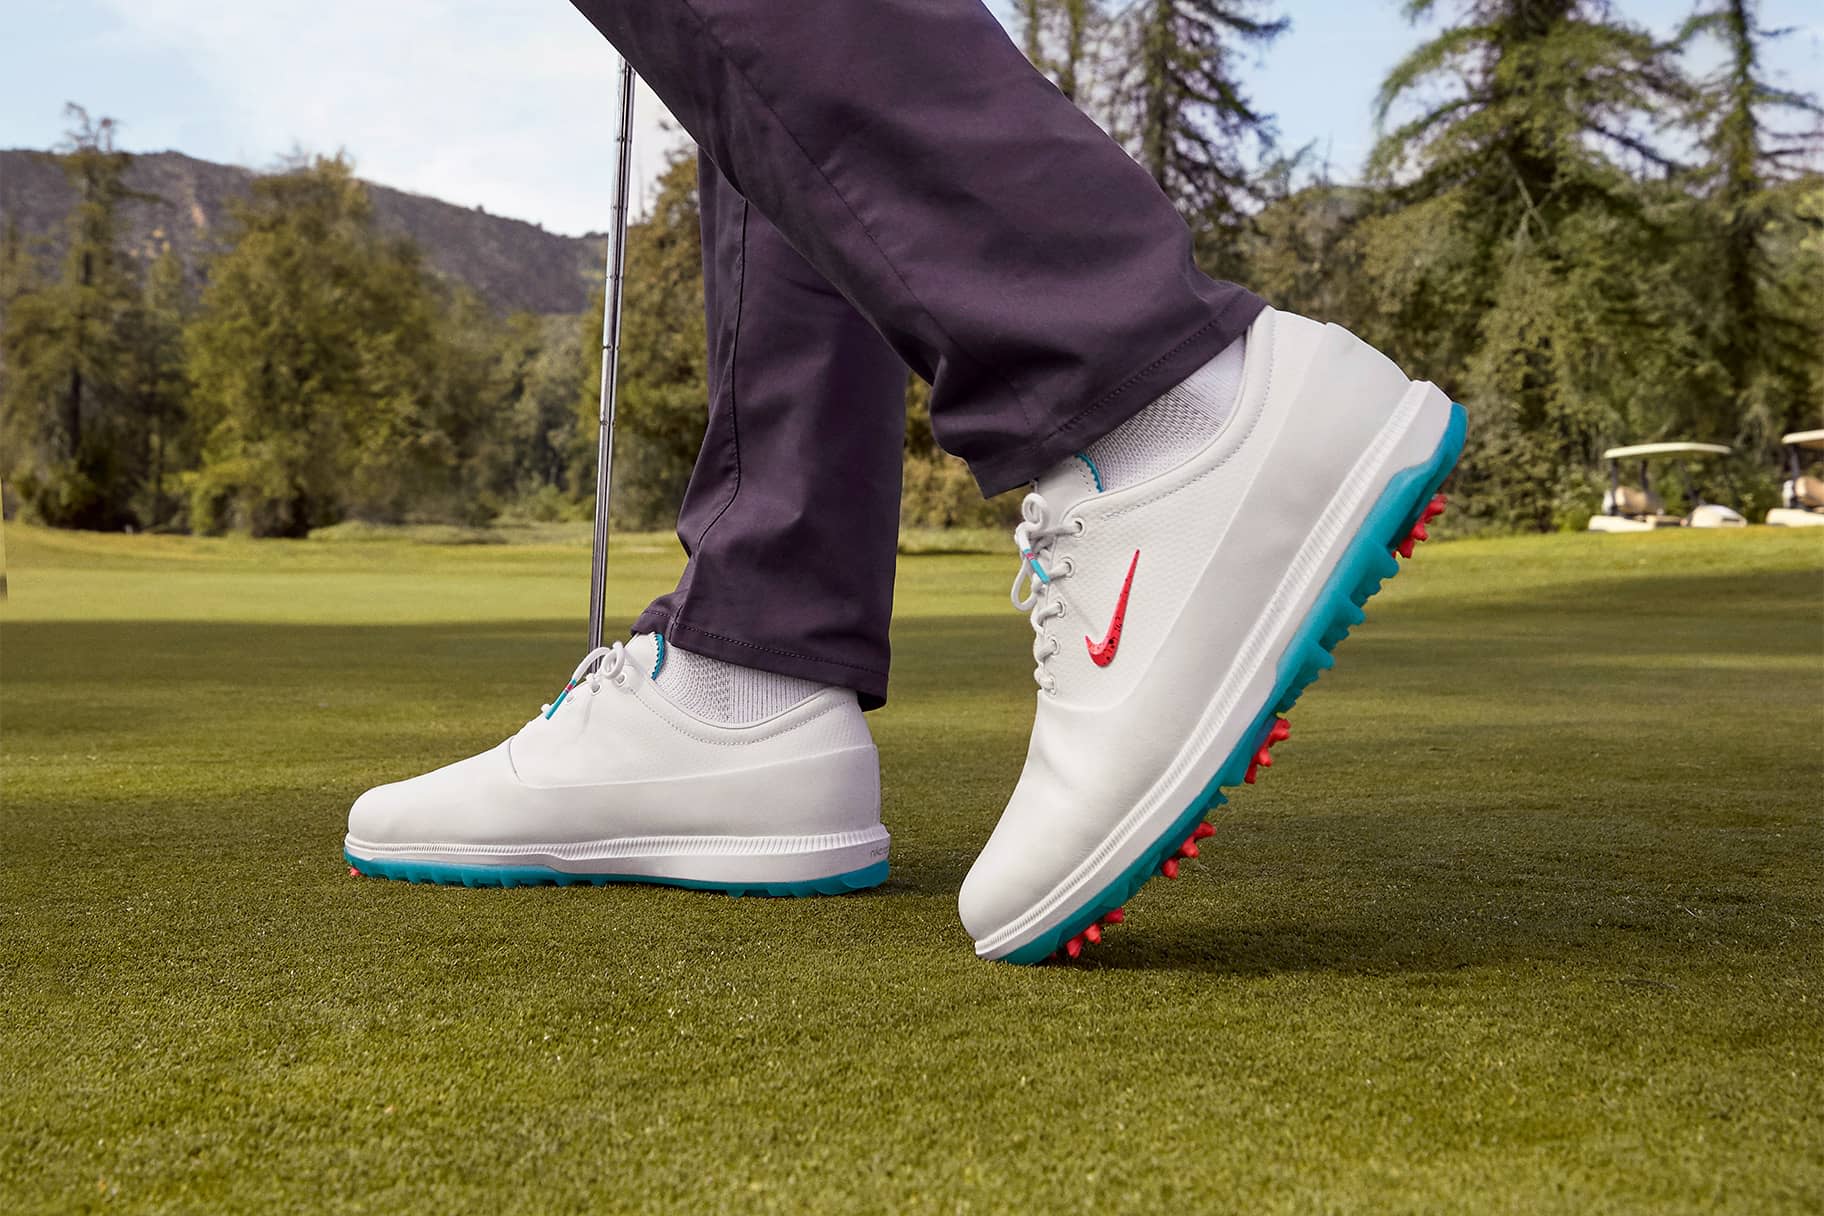 Les millors sabatilles de golf Nike que ofereixen tracció, estabilitat i comoditat